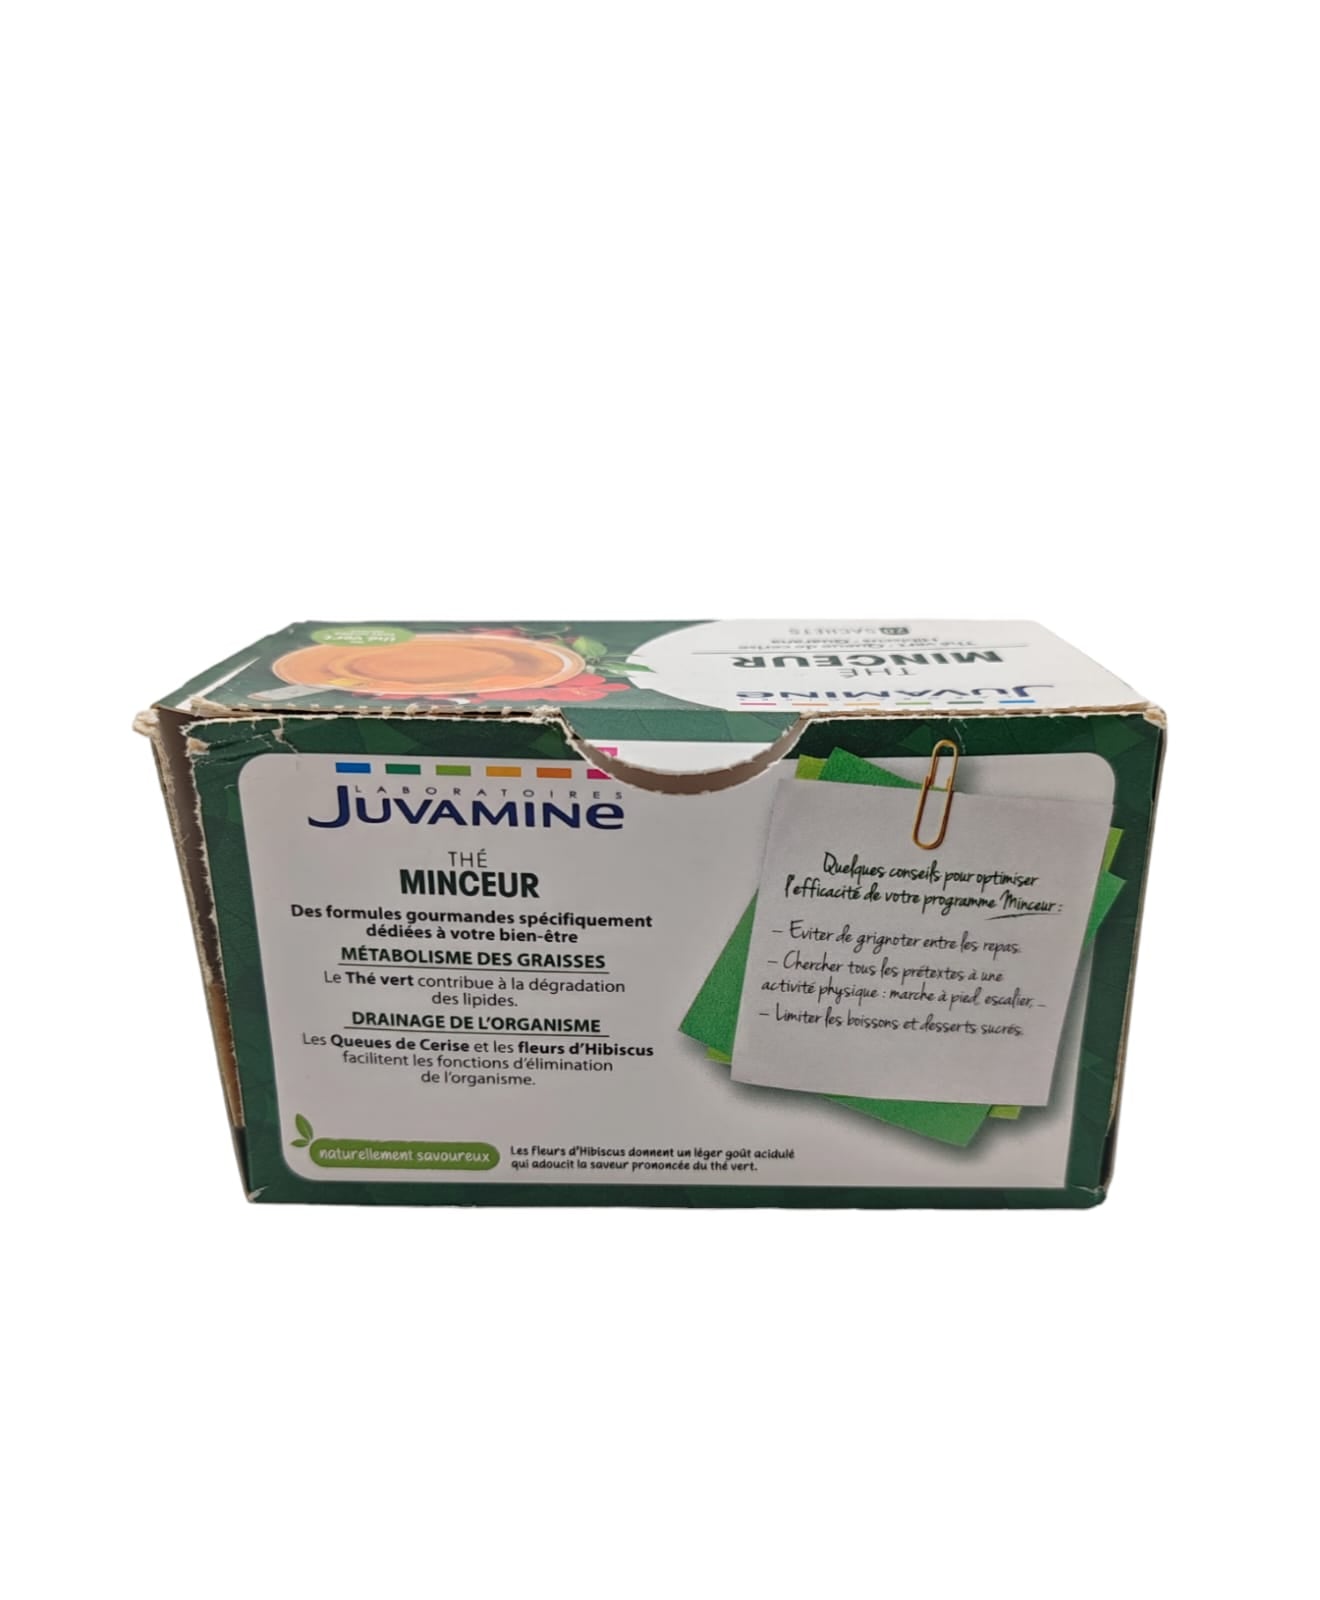 Juvamine Grönt örtbantningste 20 påsar skadad förpackning PARTI 822132021721